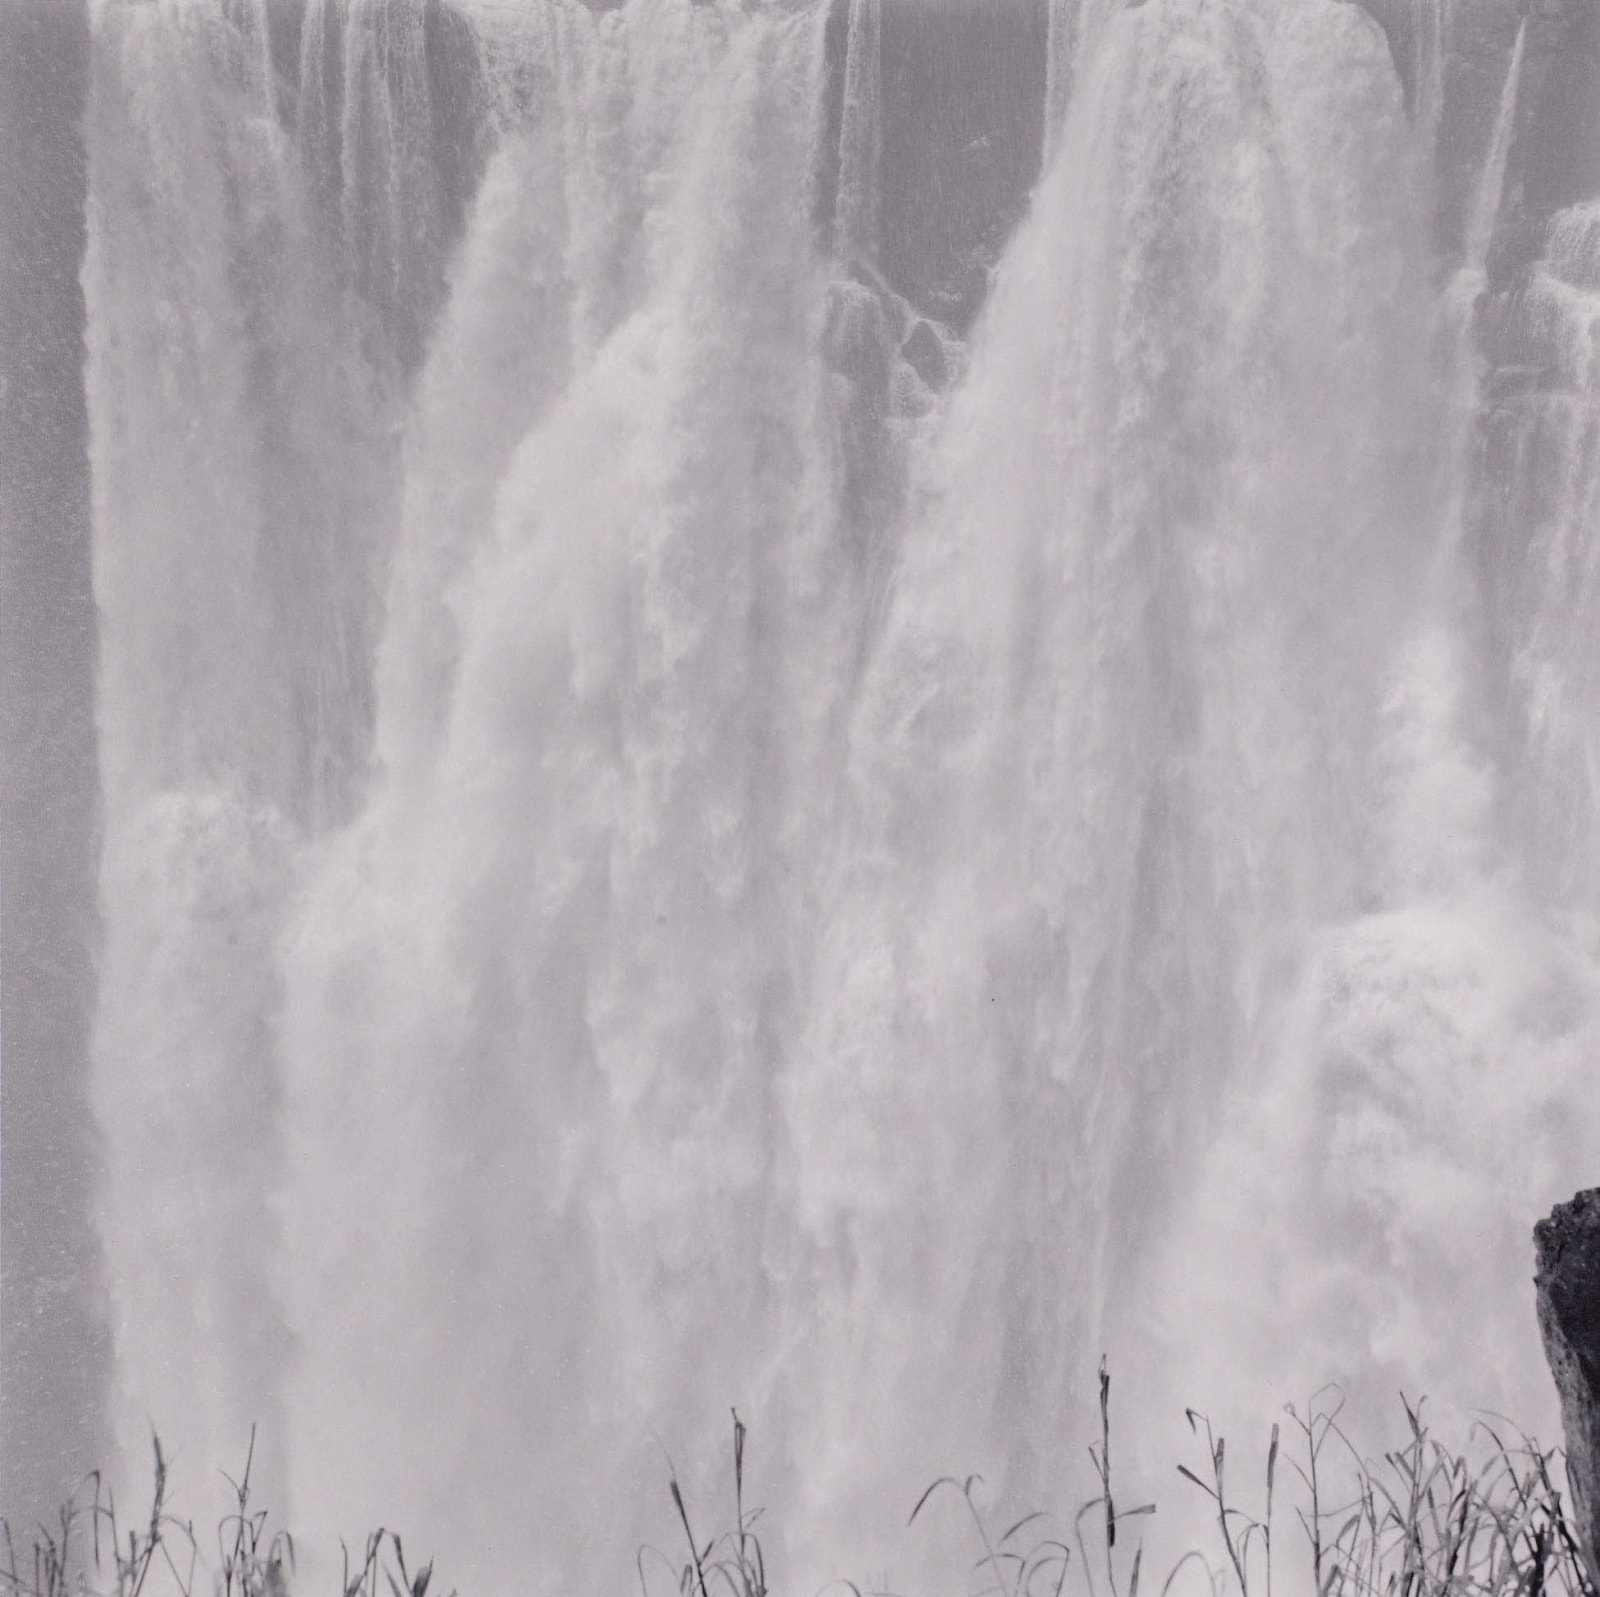 Lynn Davis, Victoria Falls, Zimbabwe, 1998